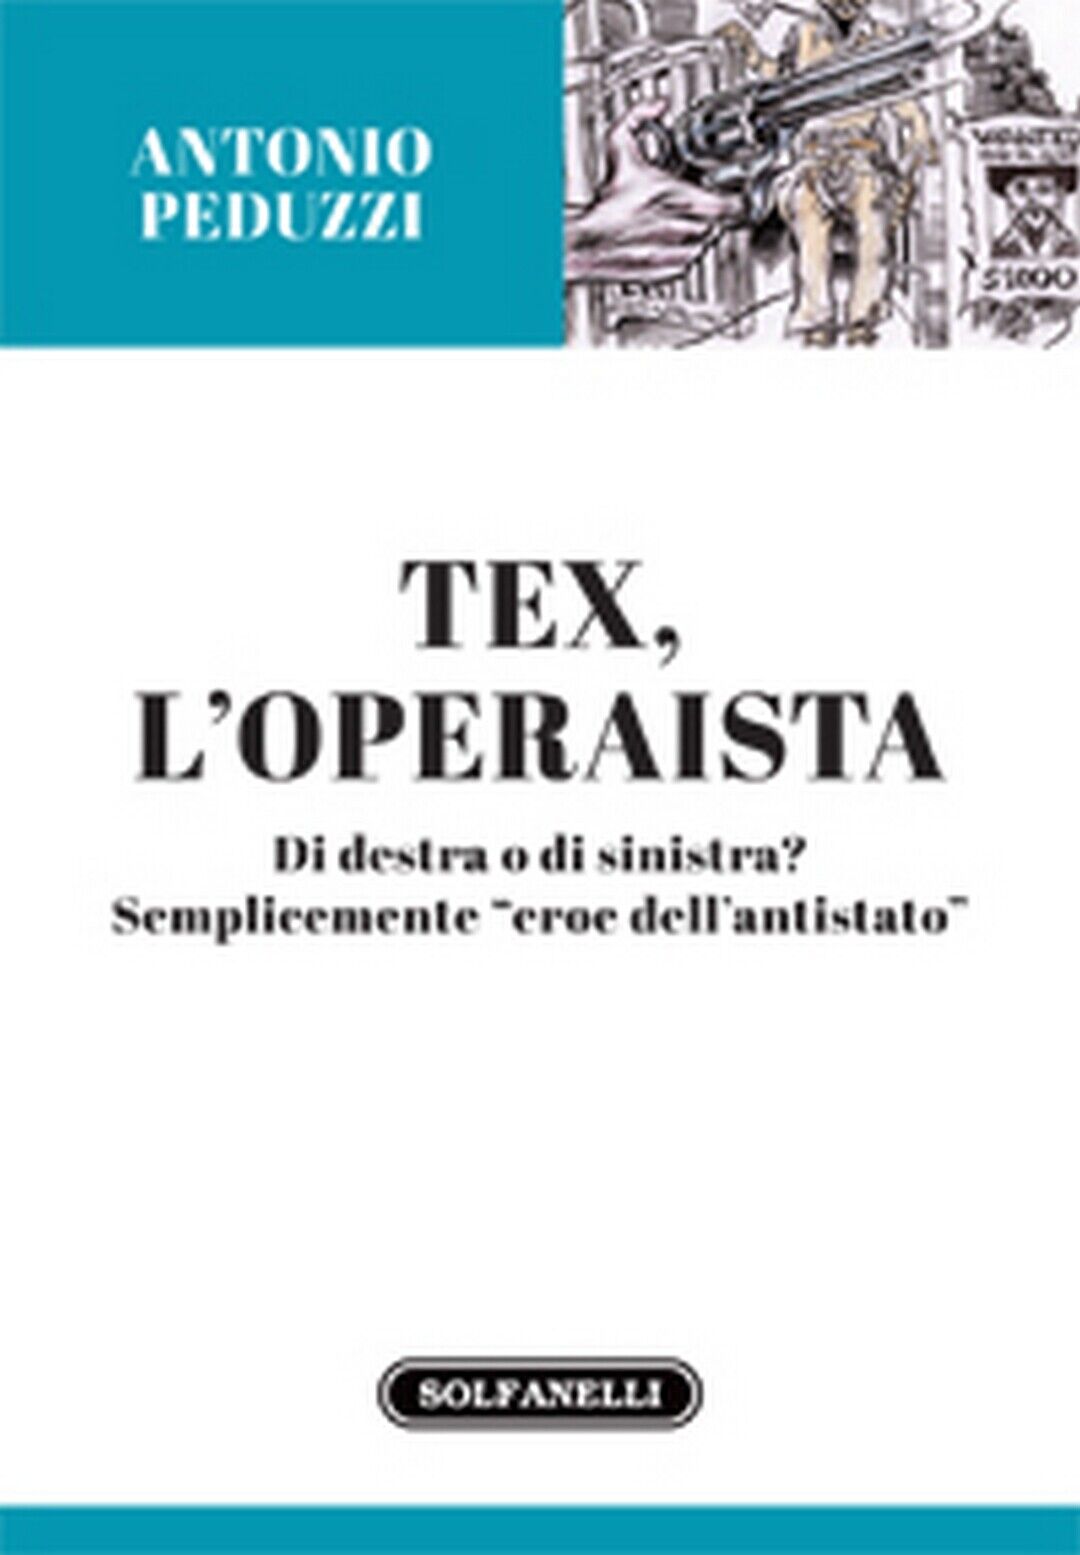 TEX L'OPERAISTA  di Antonio Peduzzi,  Solfanelli Edizioni